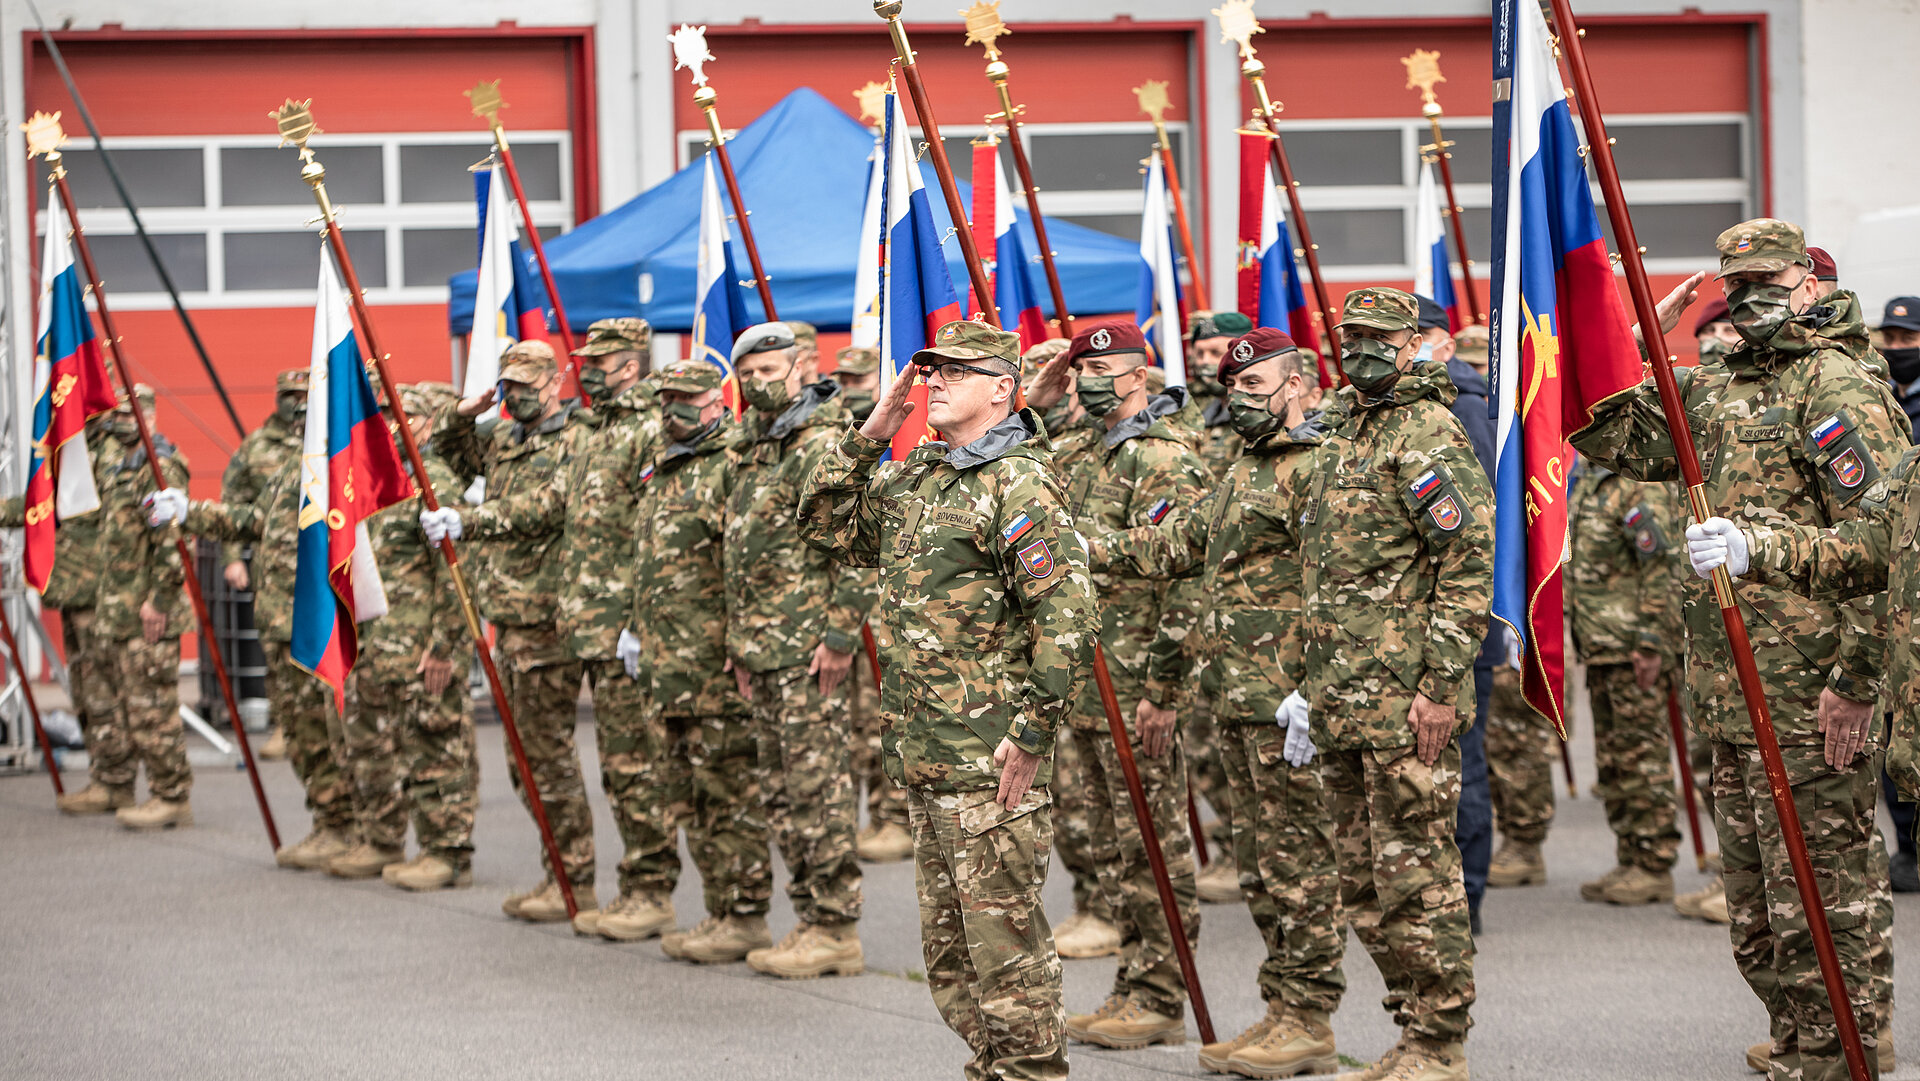 Pripadniki slovenske vojske v postroju pozdravljajo z roko